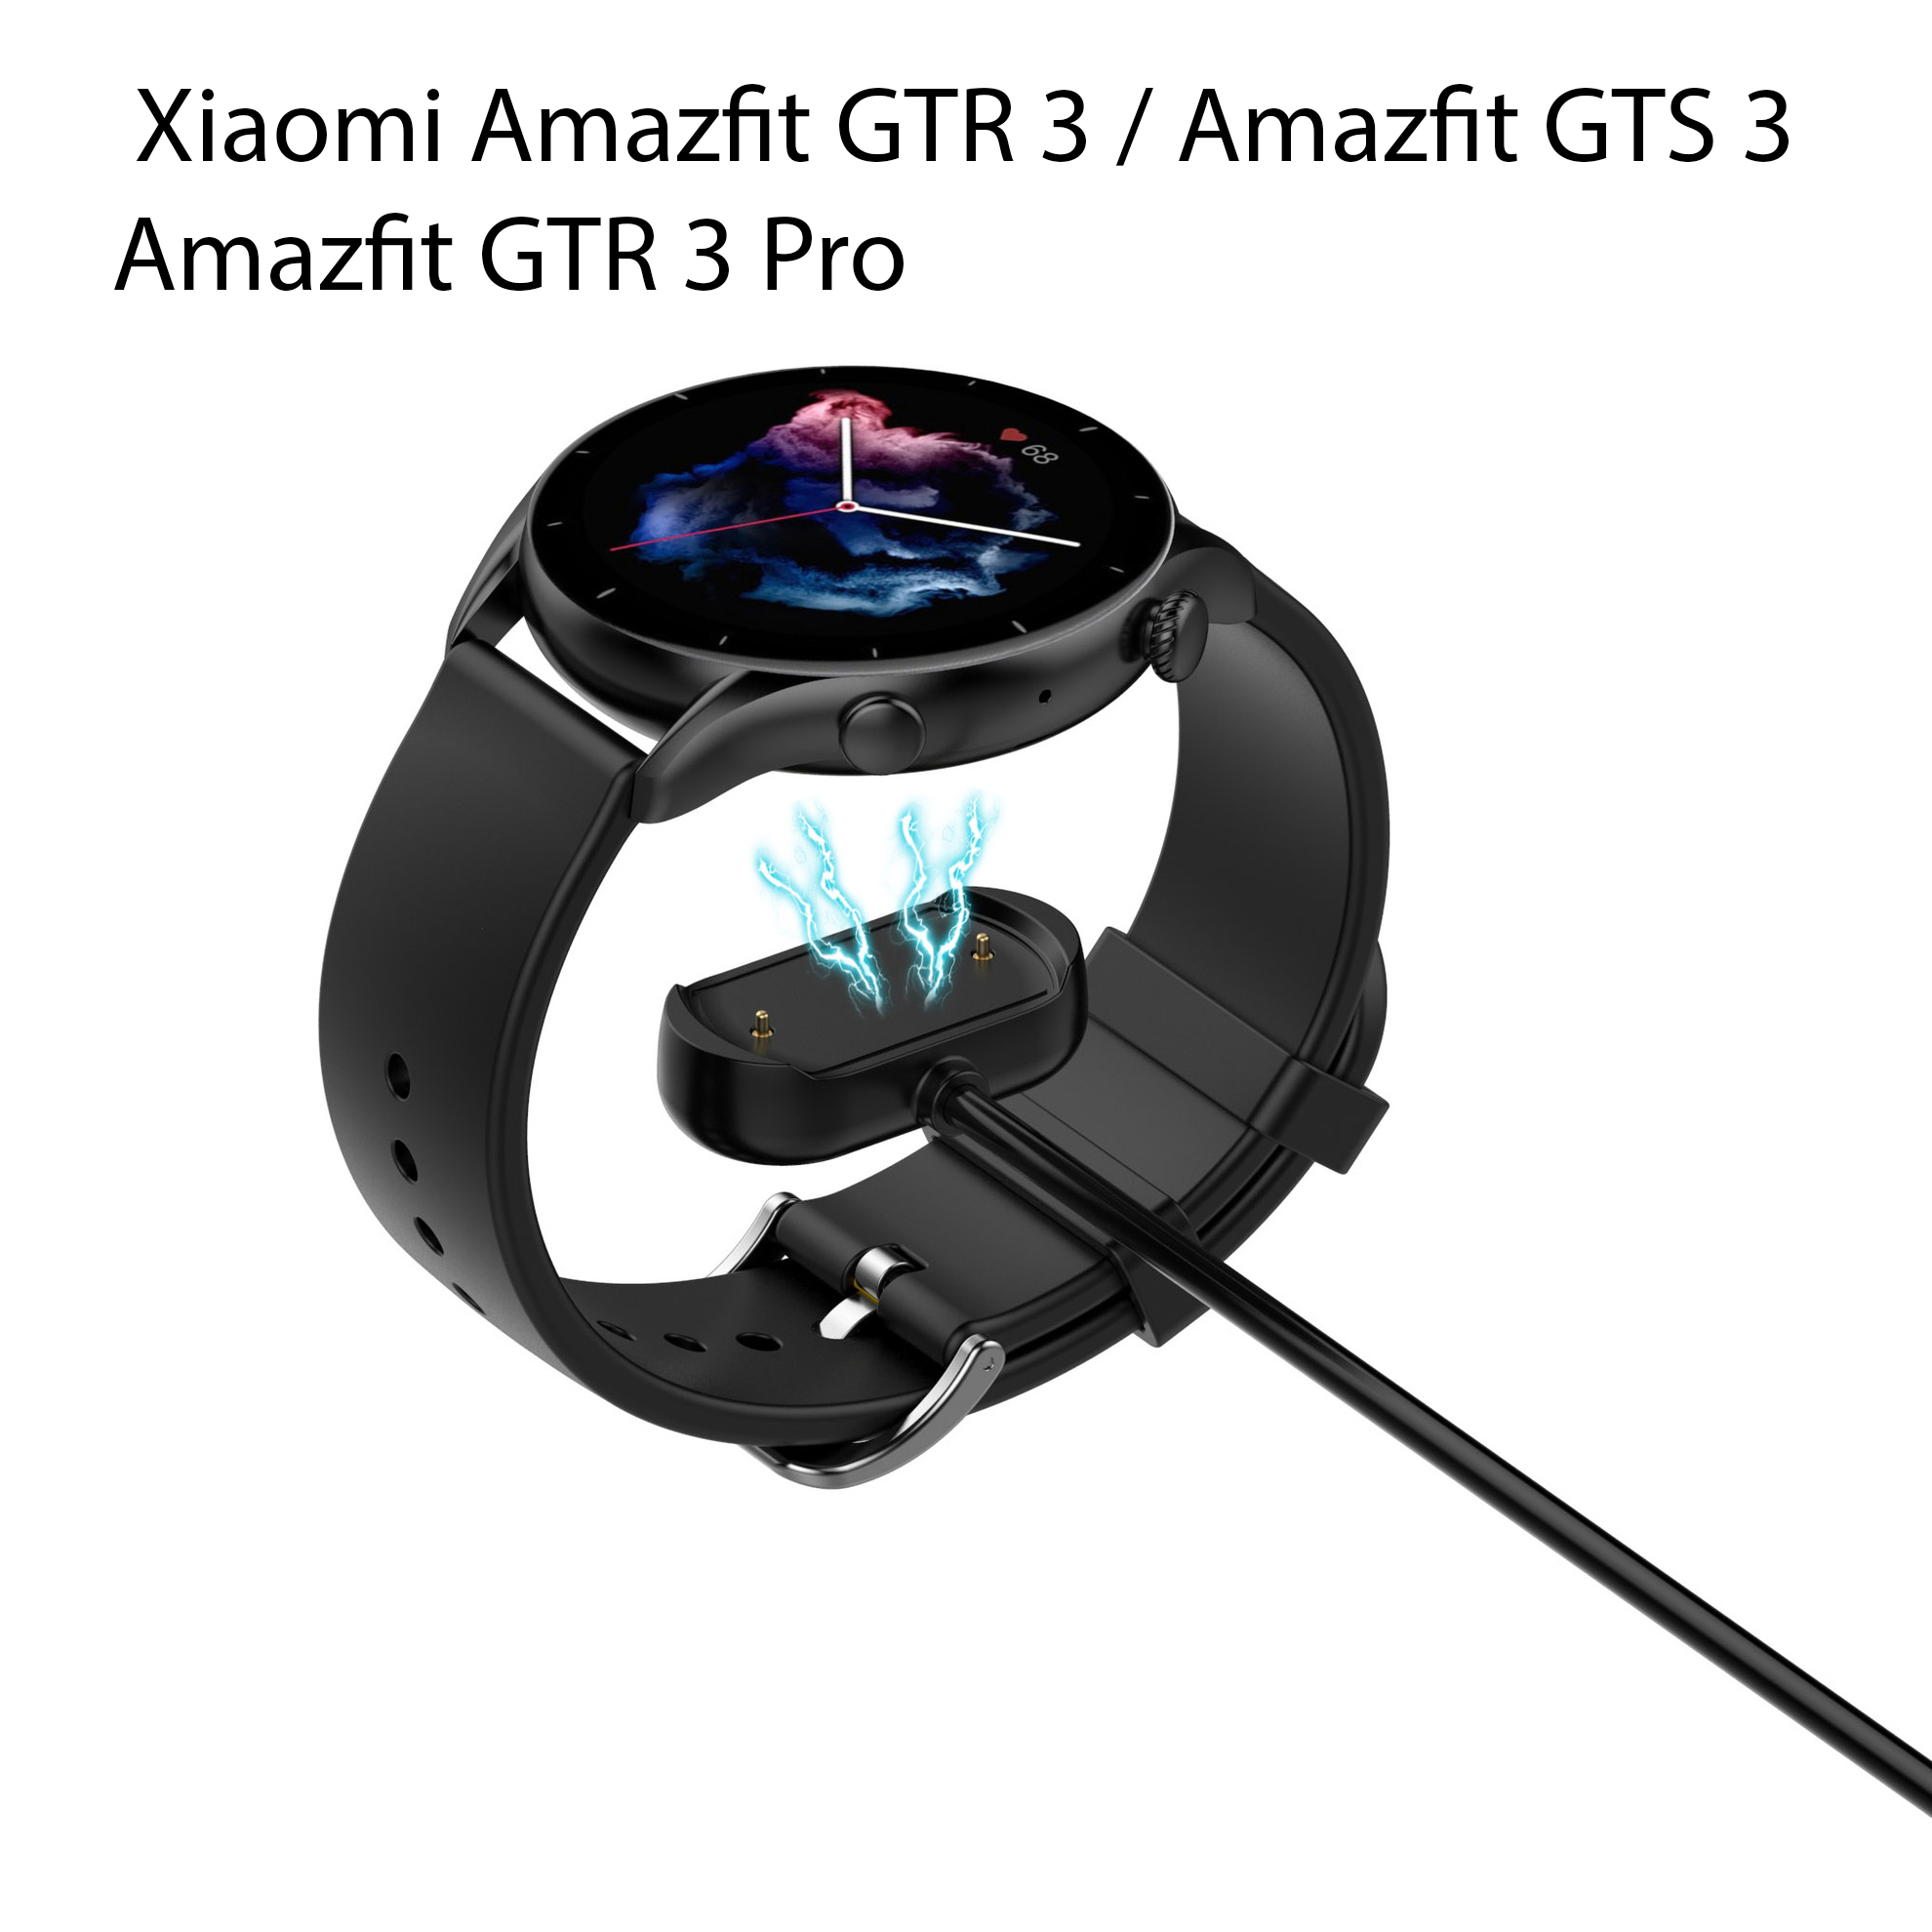 Dây Sạc Thay Thế Dành Cho Đồng Hồ Thông Minh Xiaomi Amazfit GTR4 / GTS 4 / GTR 3 / GTS 3 / GTR 4 Pro / GTR 3 Pro 1 Mét